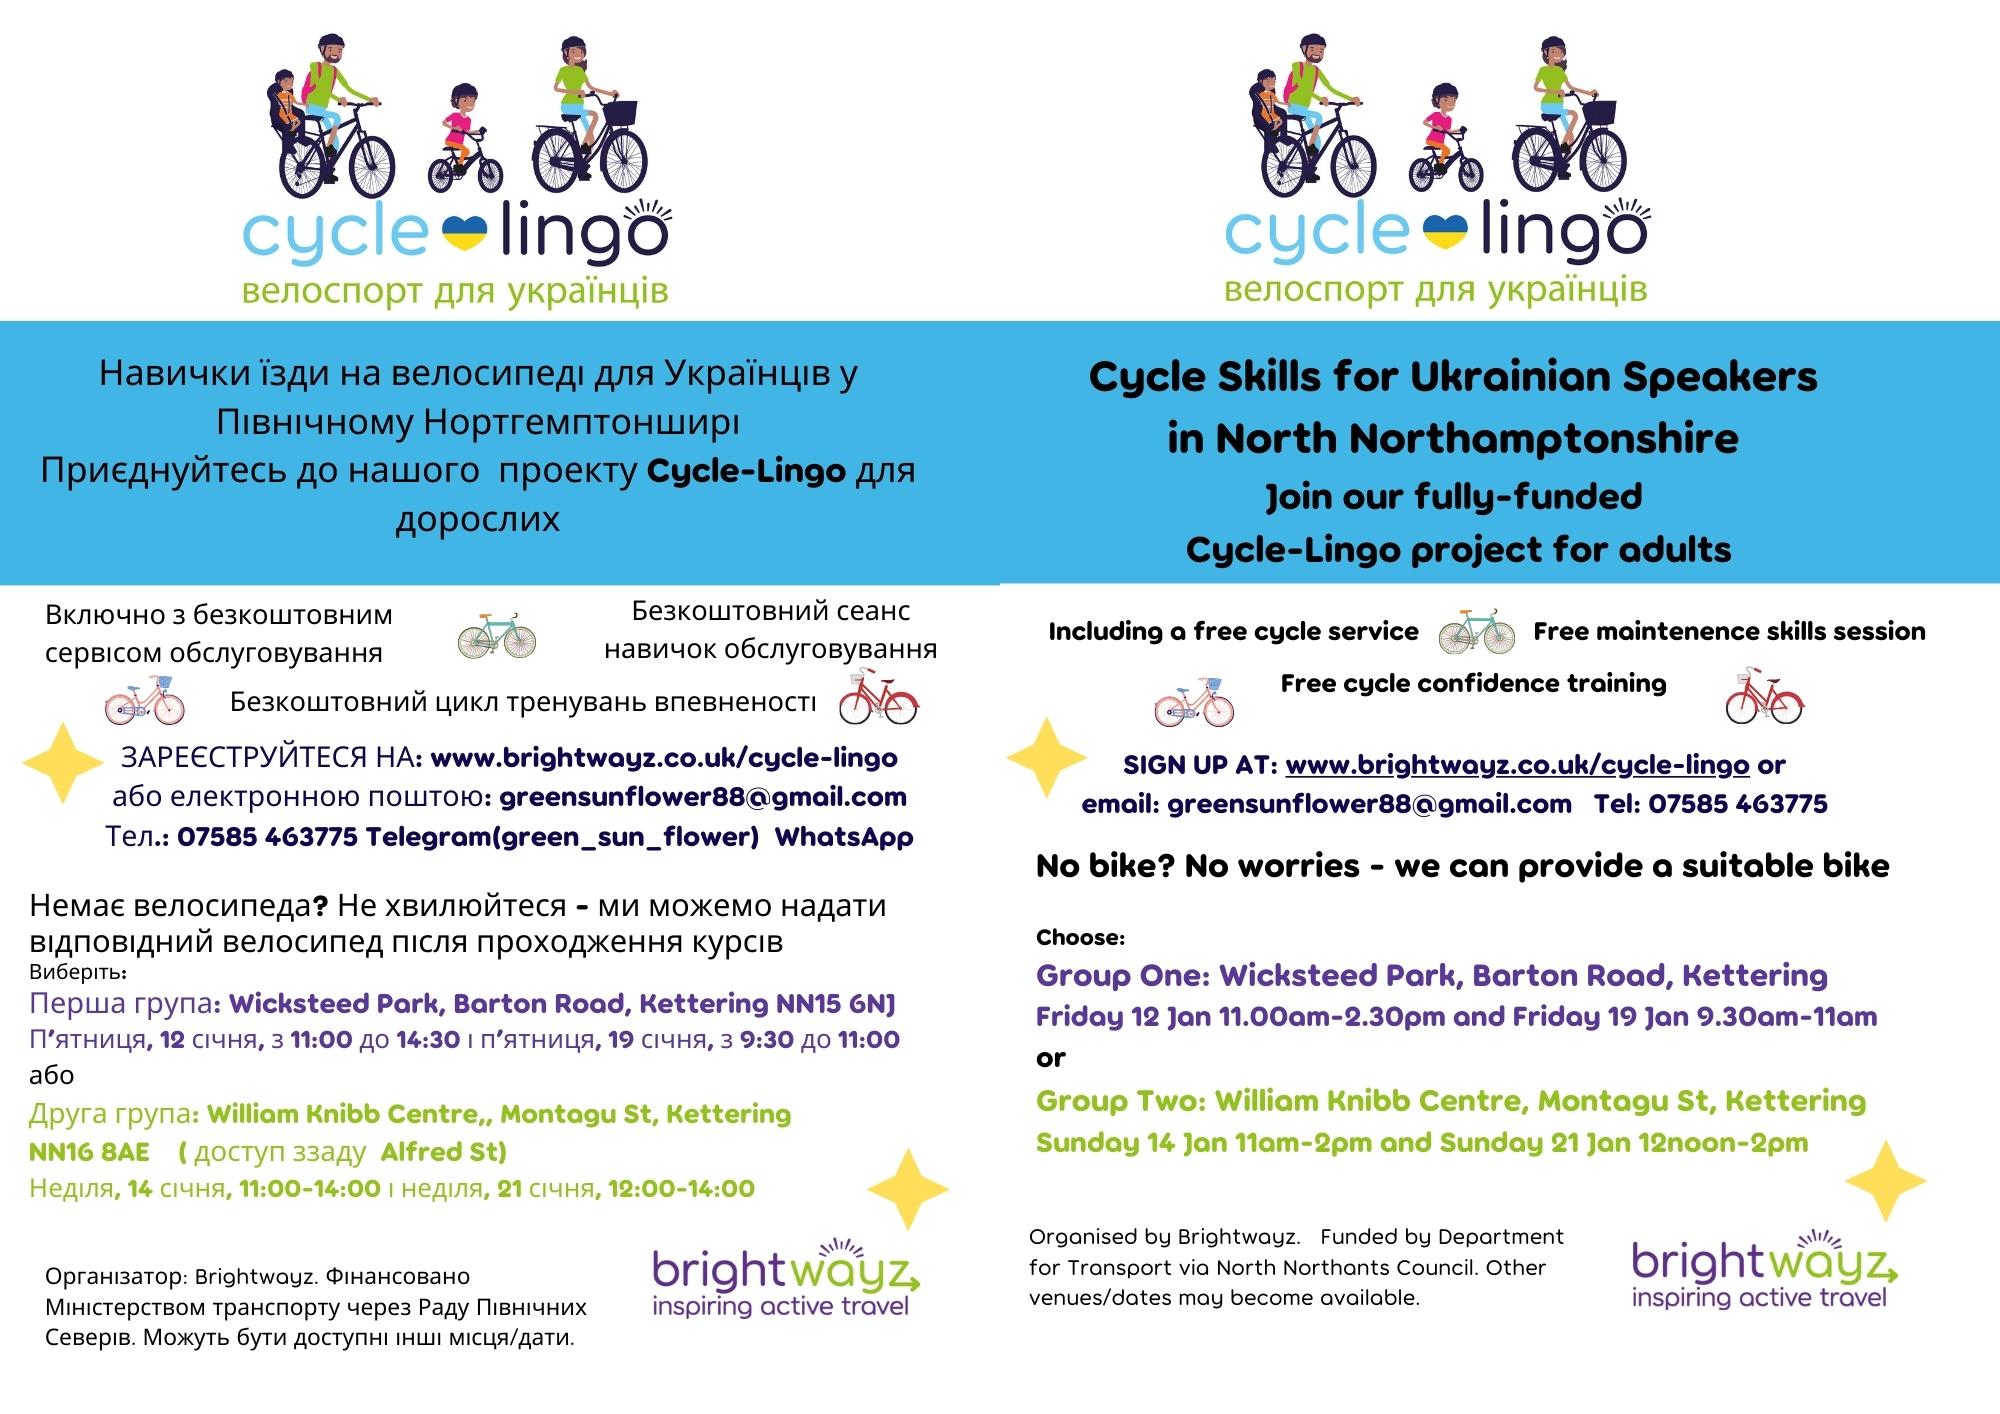 cycle lingo flyer in english and ukrainian